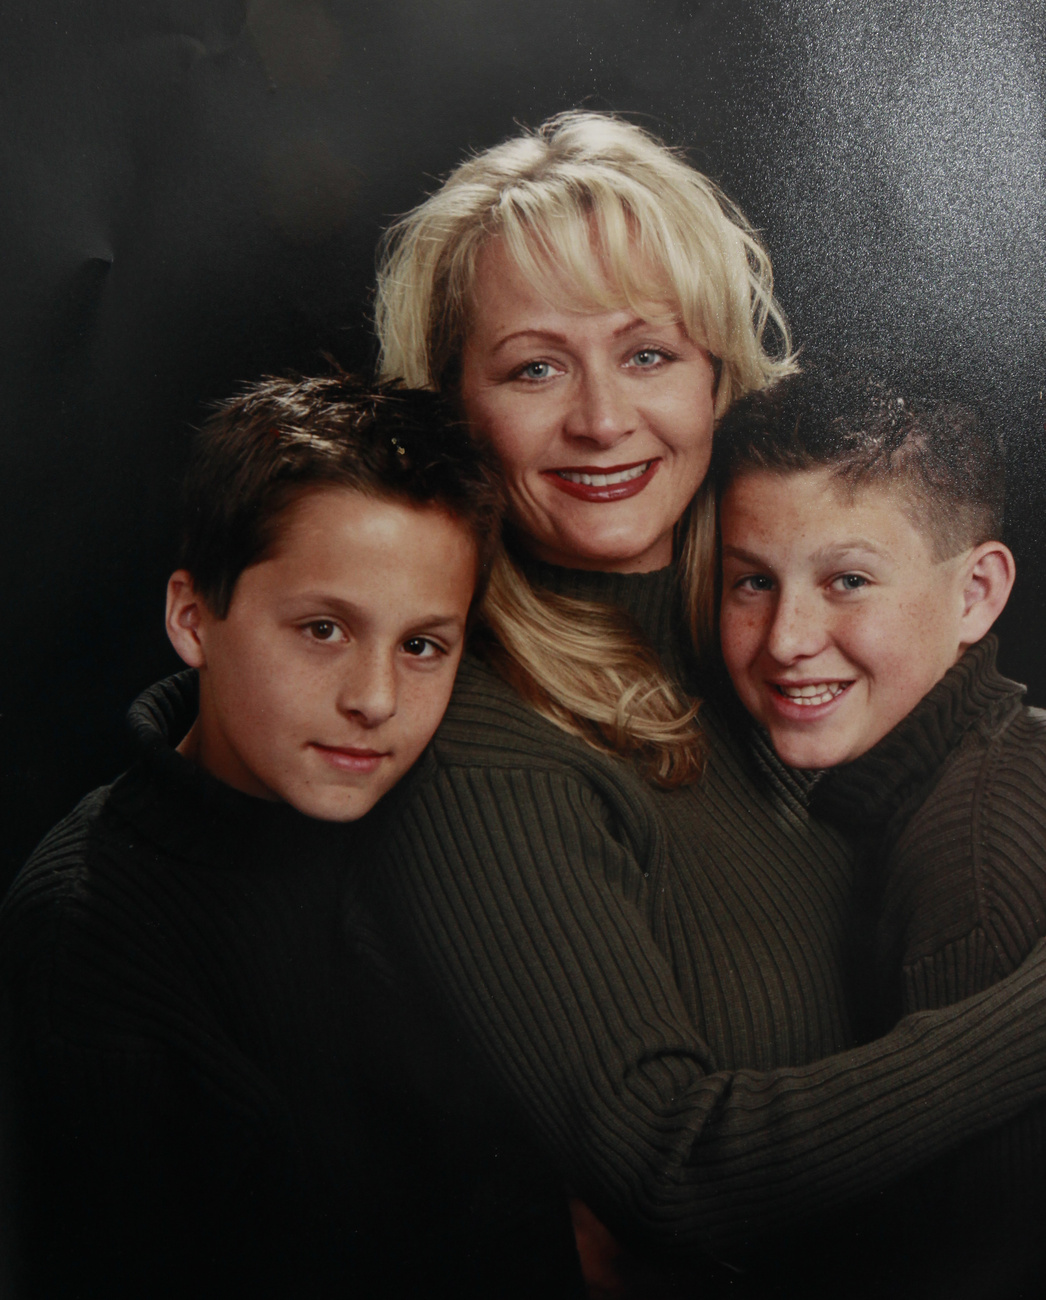 Ez a műtermi fotó 2008-as az akkor még háromtagú családról